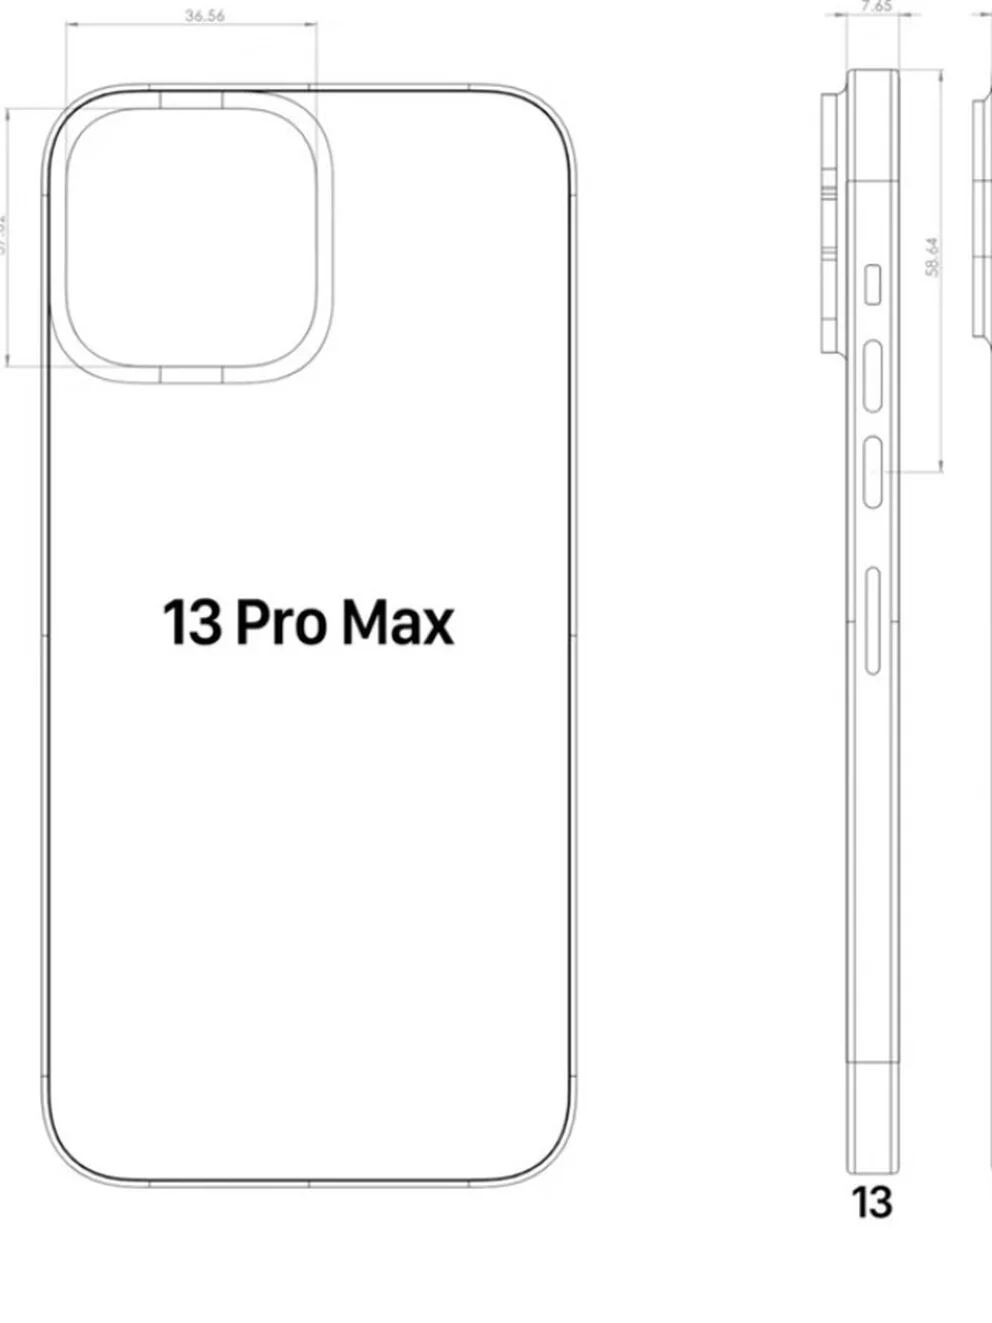 El iPhone 13 se presentaría en color negro mate, con pantalla siempre  encendida y más, según